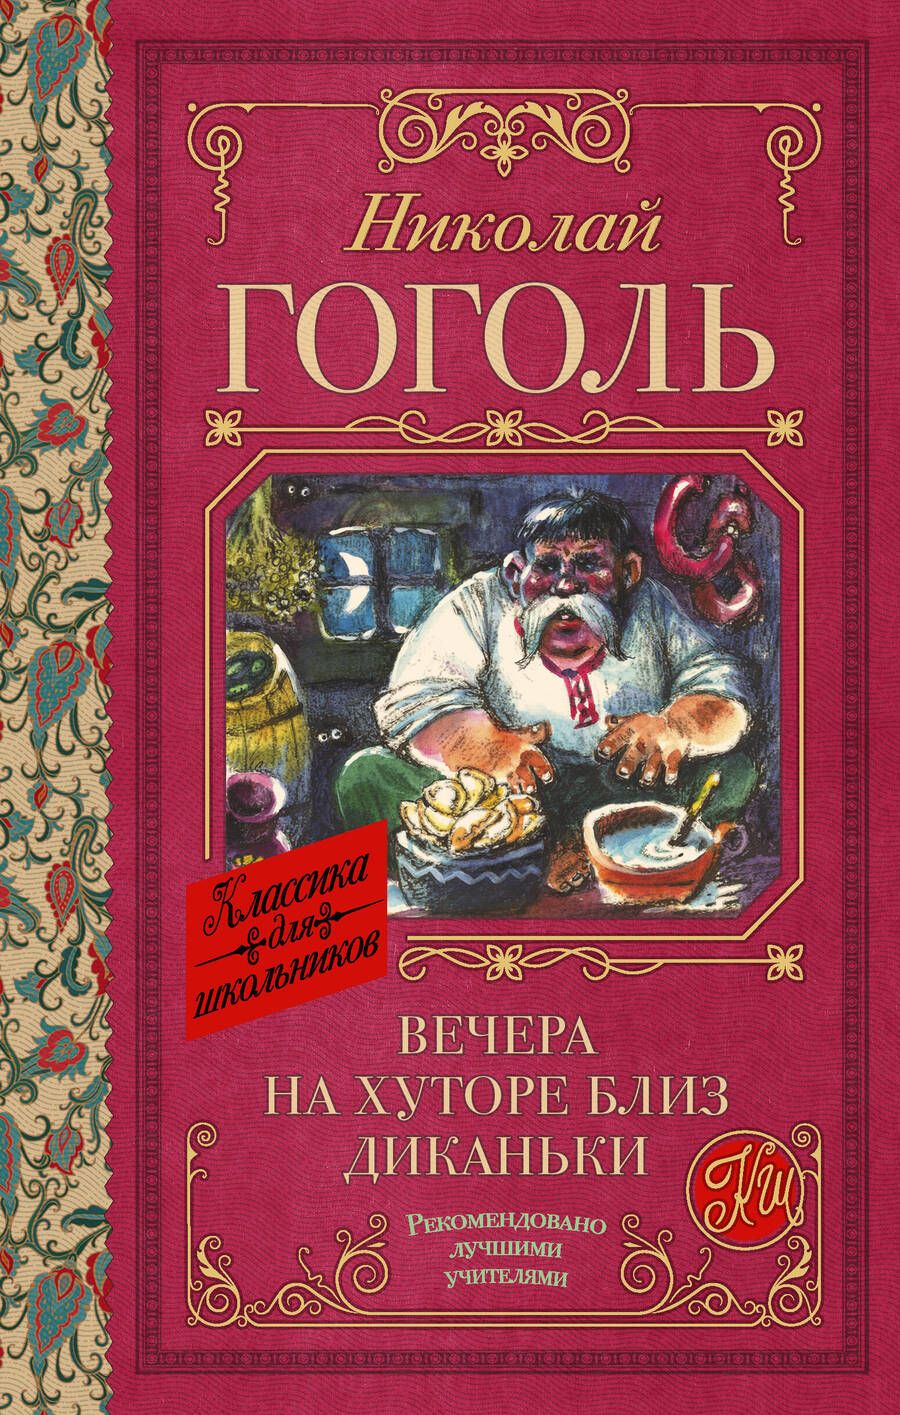 Обложка книги "Гоголь: Вечера на хуторе близ Диканьки"